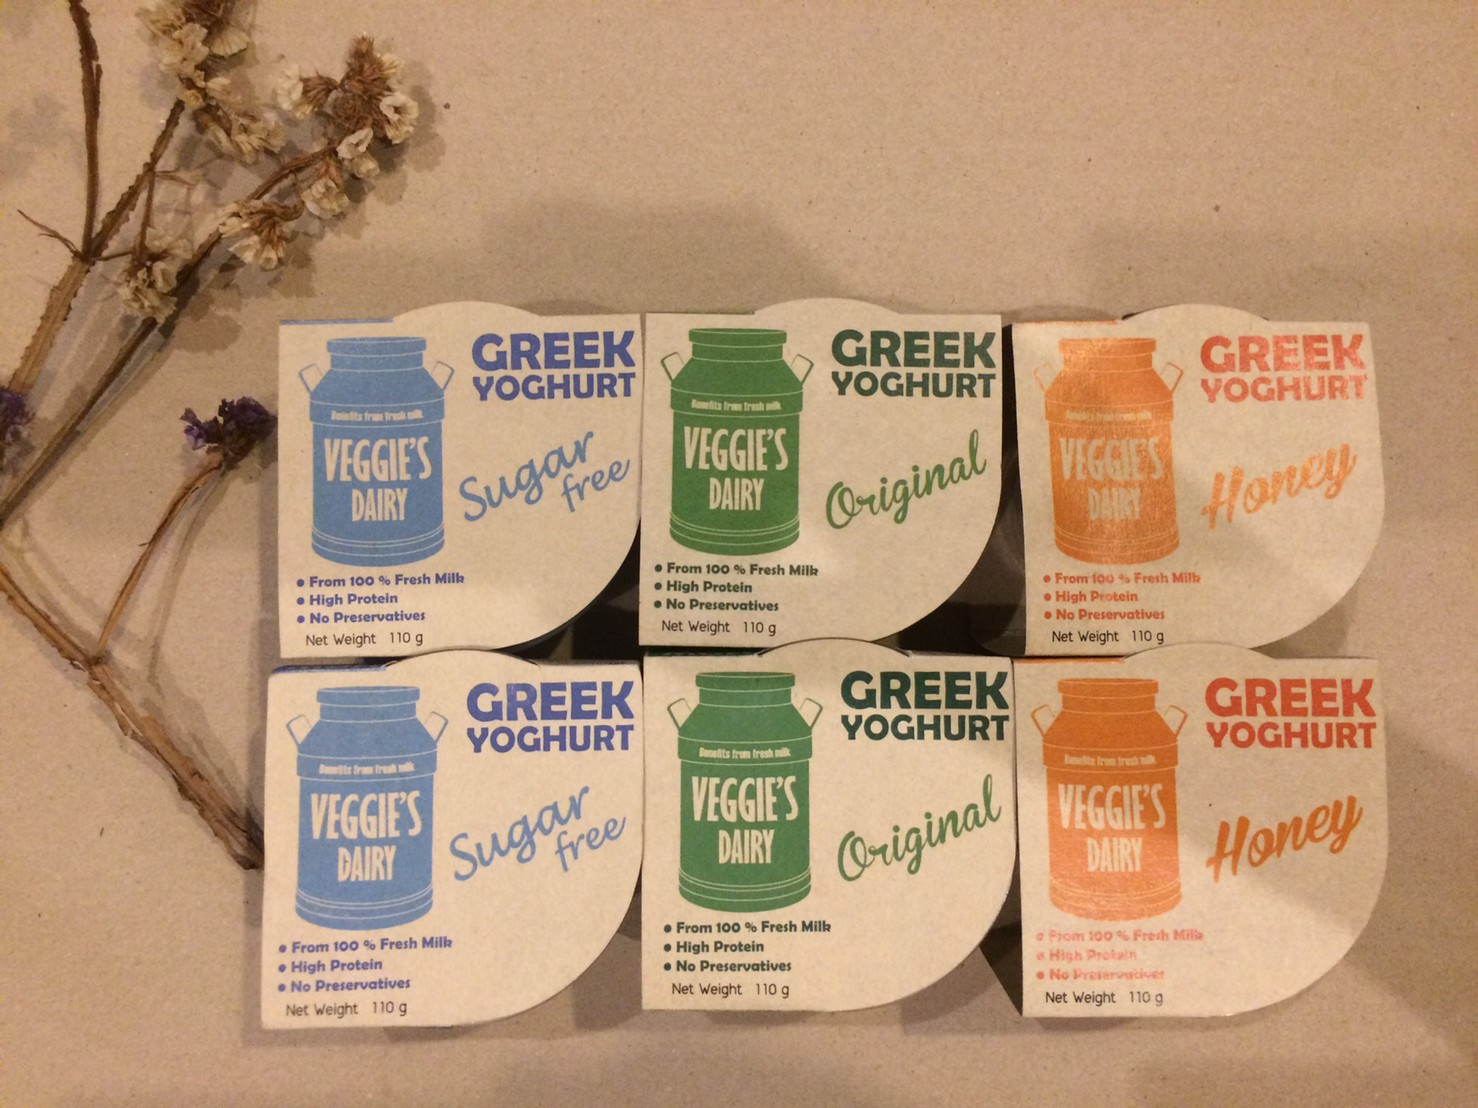 กรีกโยเกิร์ต เวจจี้ส์แดรี่ 100 กรัม แพค 6 ถ้วย สามารถเลือกรสชาติได้ Greek Yoghurt Veggie’s Dairy 100g 6 cups